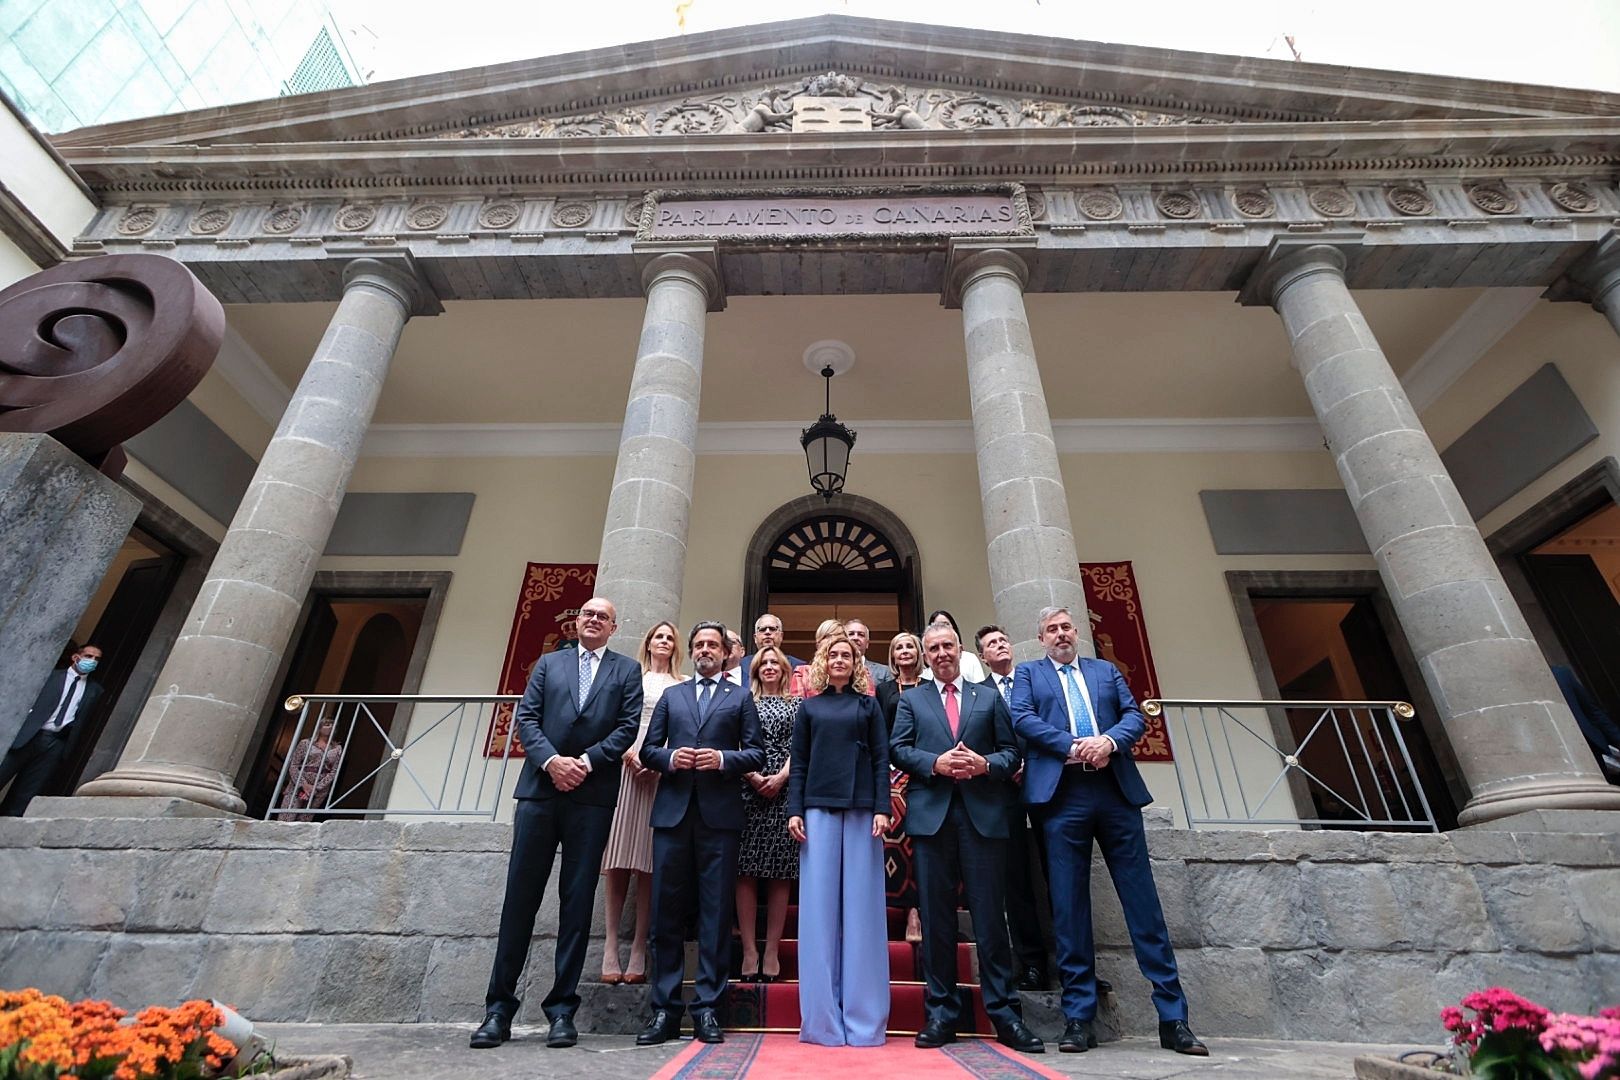 40 aniversario del Parlamento de Canarias